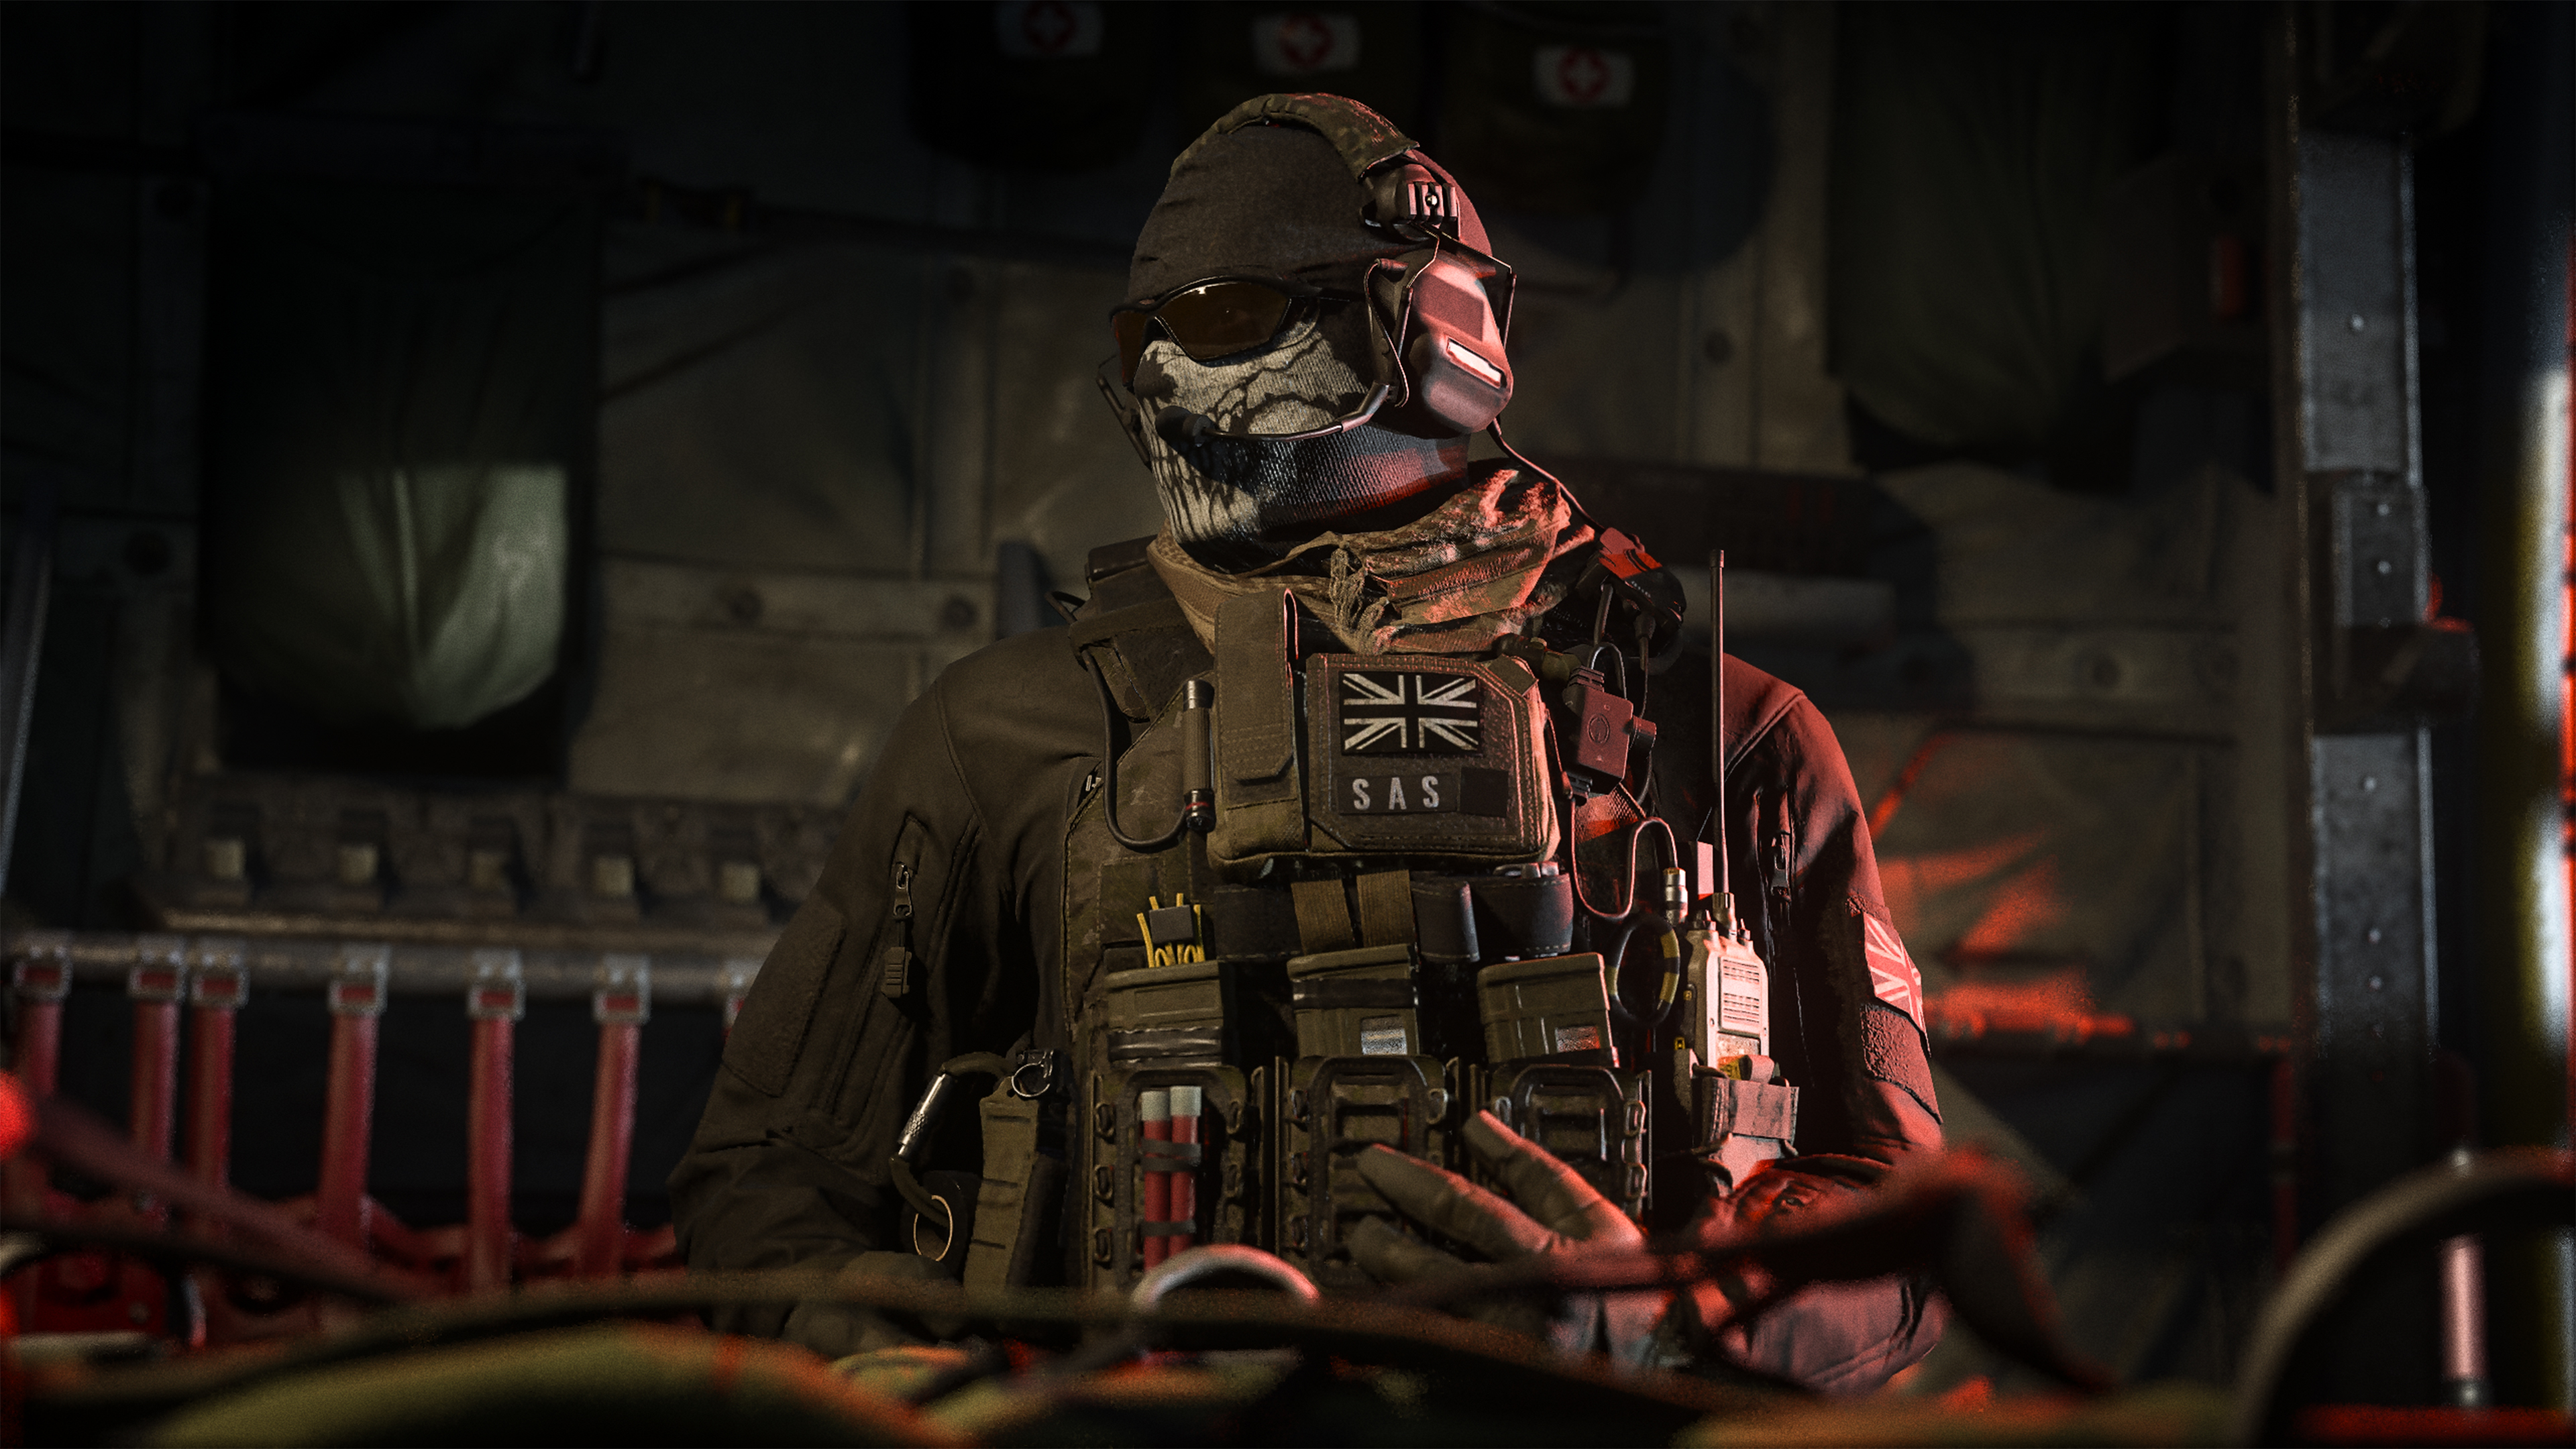 Call of Duty: Modern Warfare 3 Cross-Gen Bundle (Sony PlayStation 3/4 2023)  for sale online